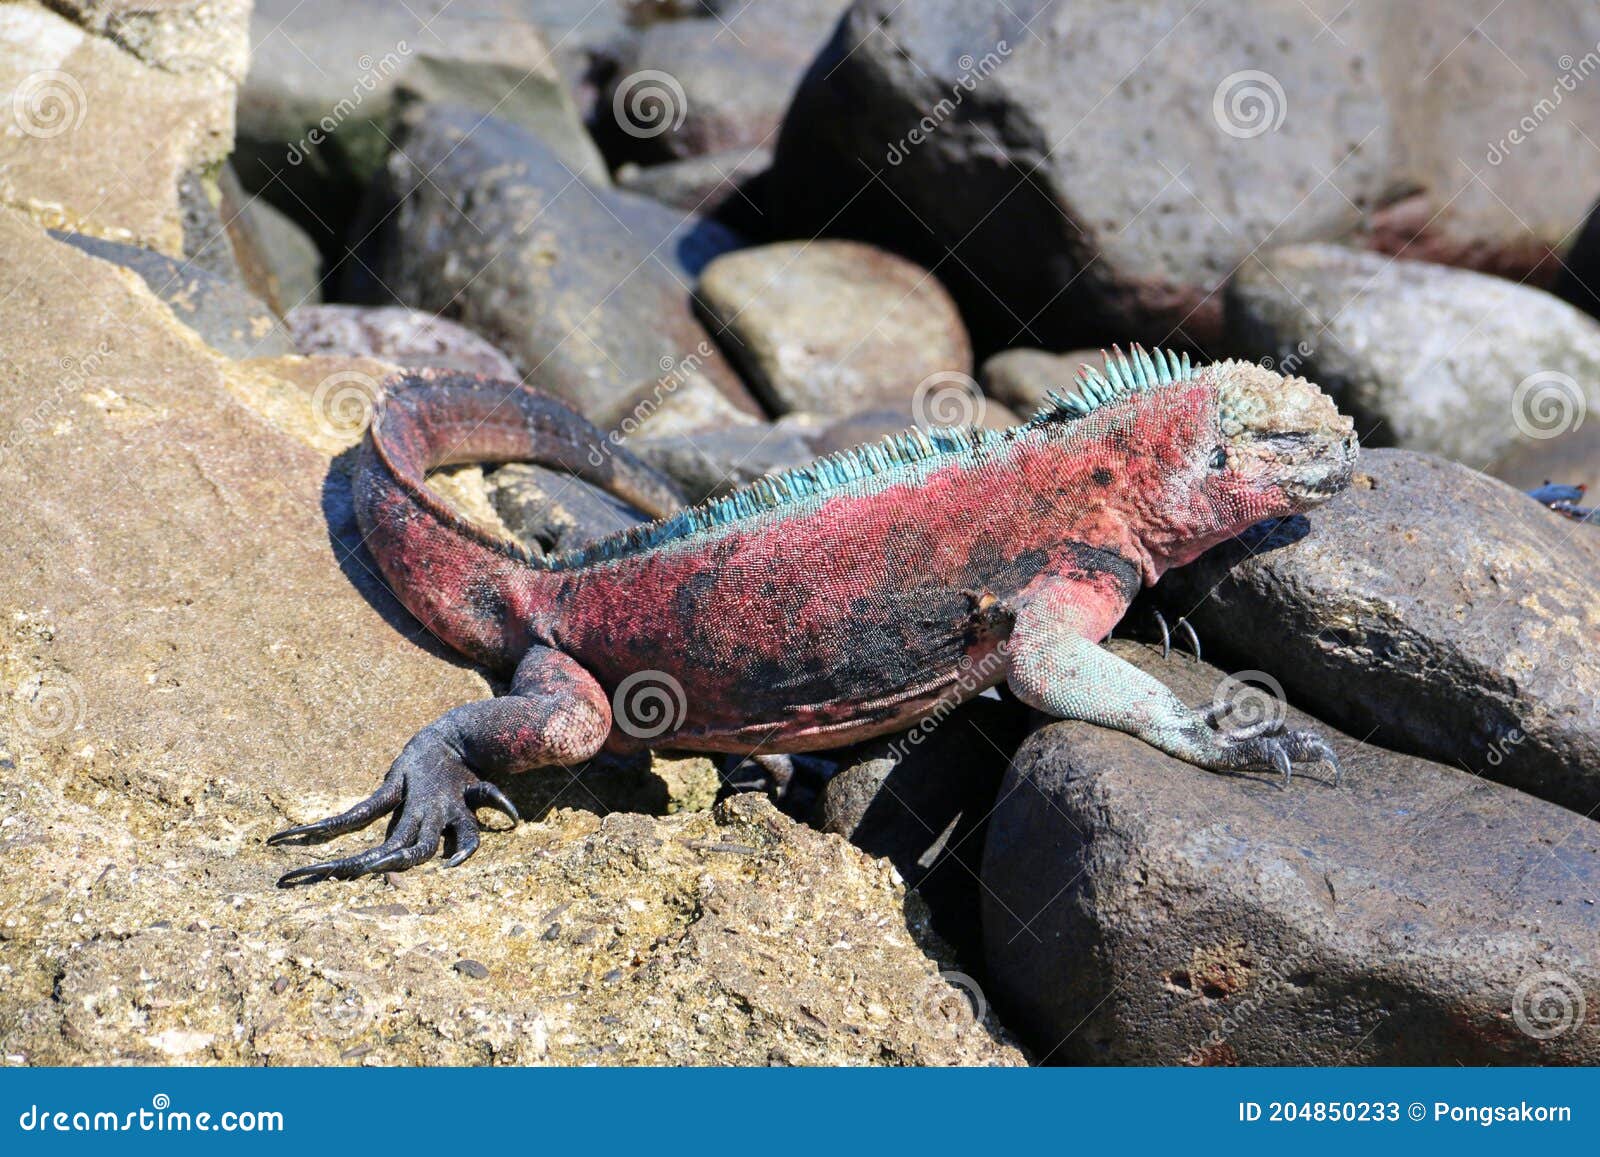 espaÃÂ±ola iguanas christmas iguanas in galapagos